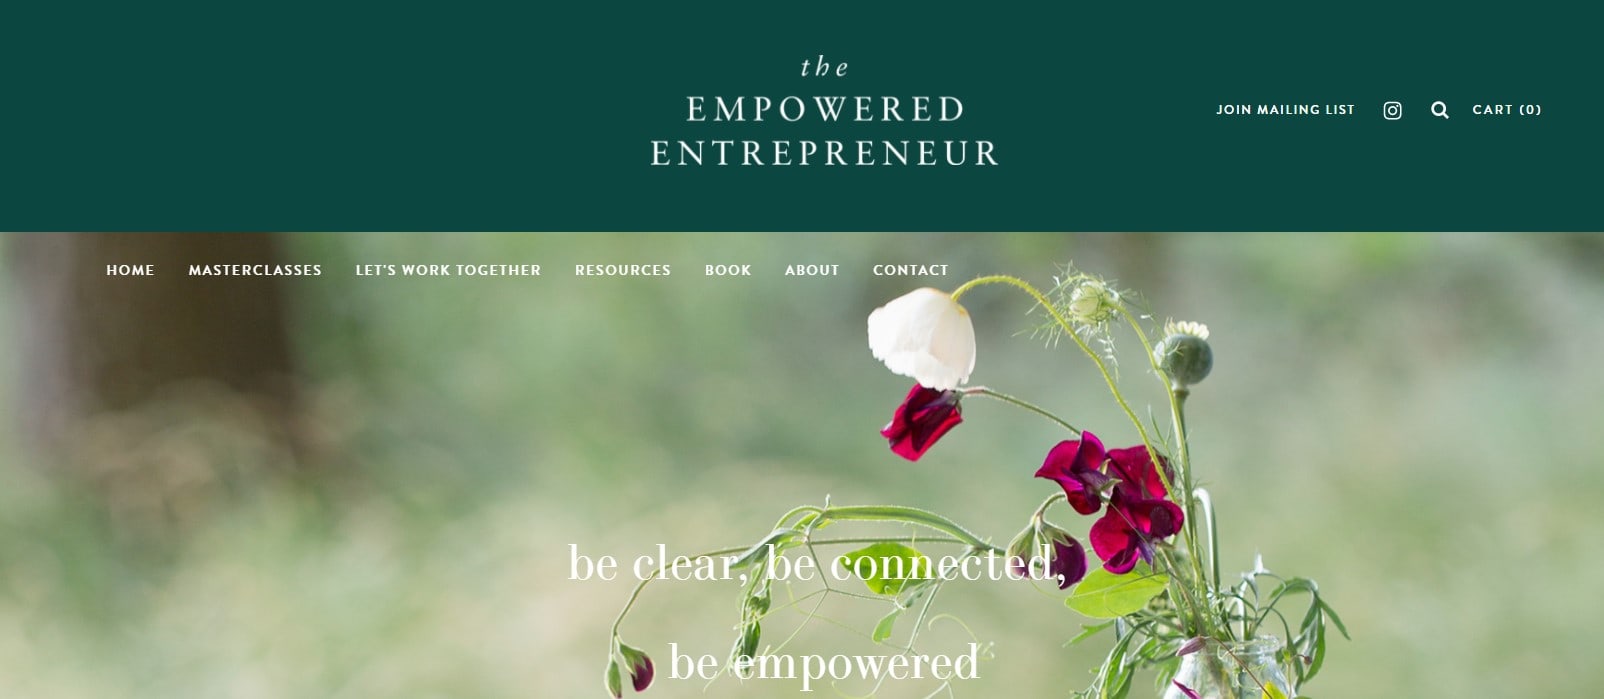 Kajabi Website Examples The Empowered Entrepreneur